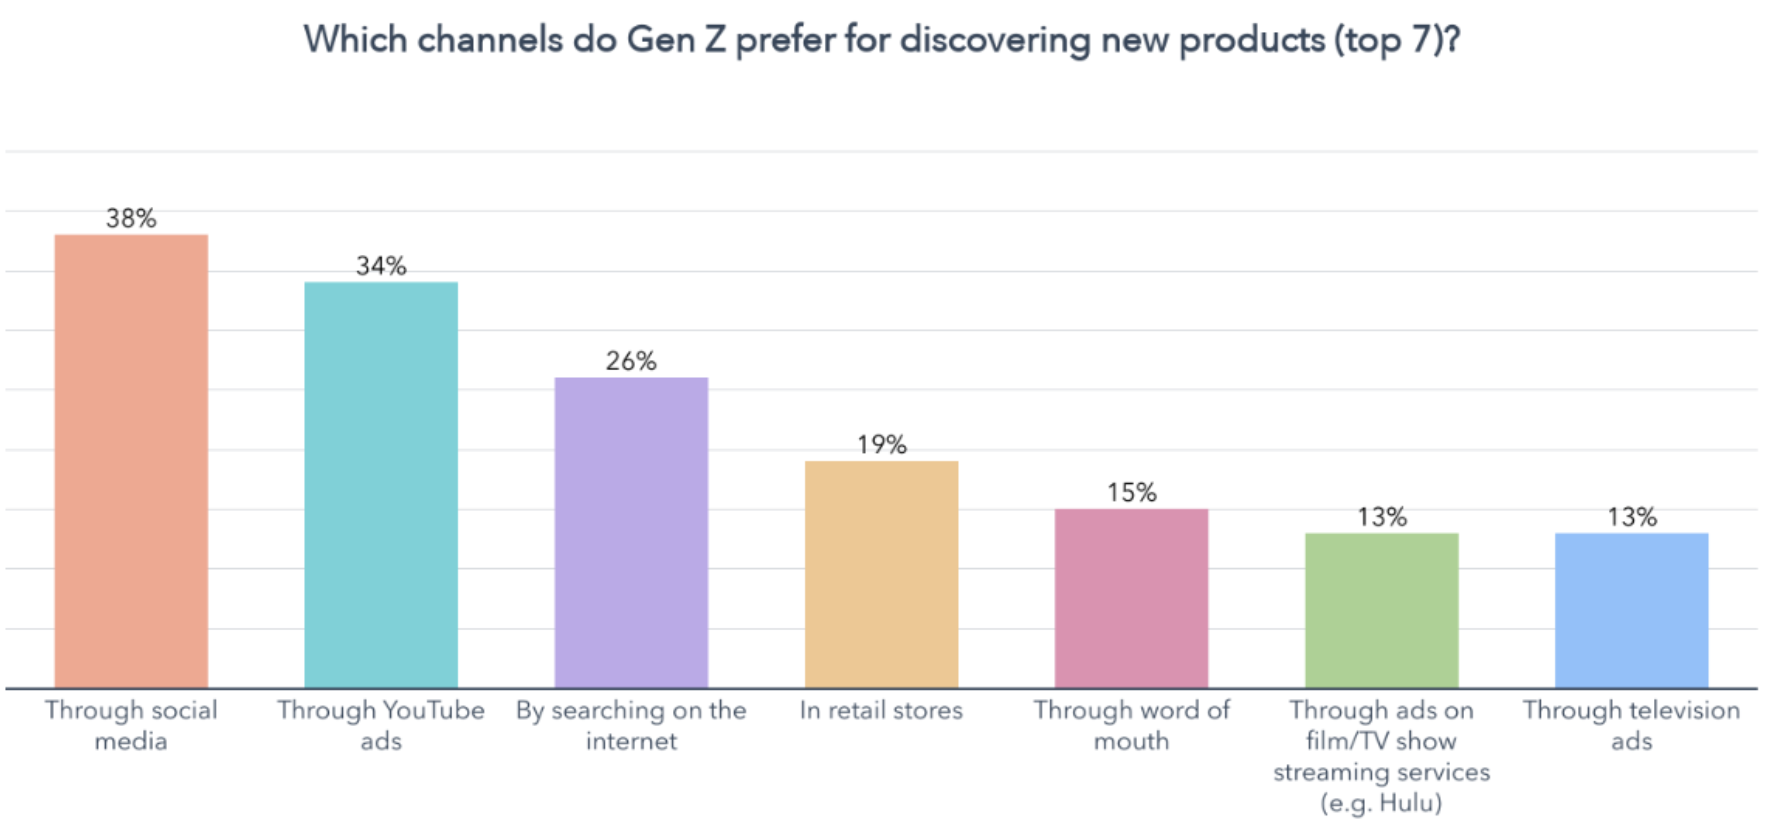 शीर्ष 7 चैनलों को दर्शाने वाला ग्राफ़ Gen Z नए उत्पादों की खोज के लिए पसंद करता है। 